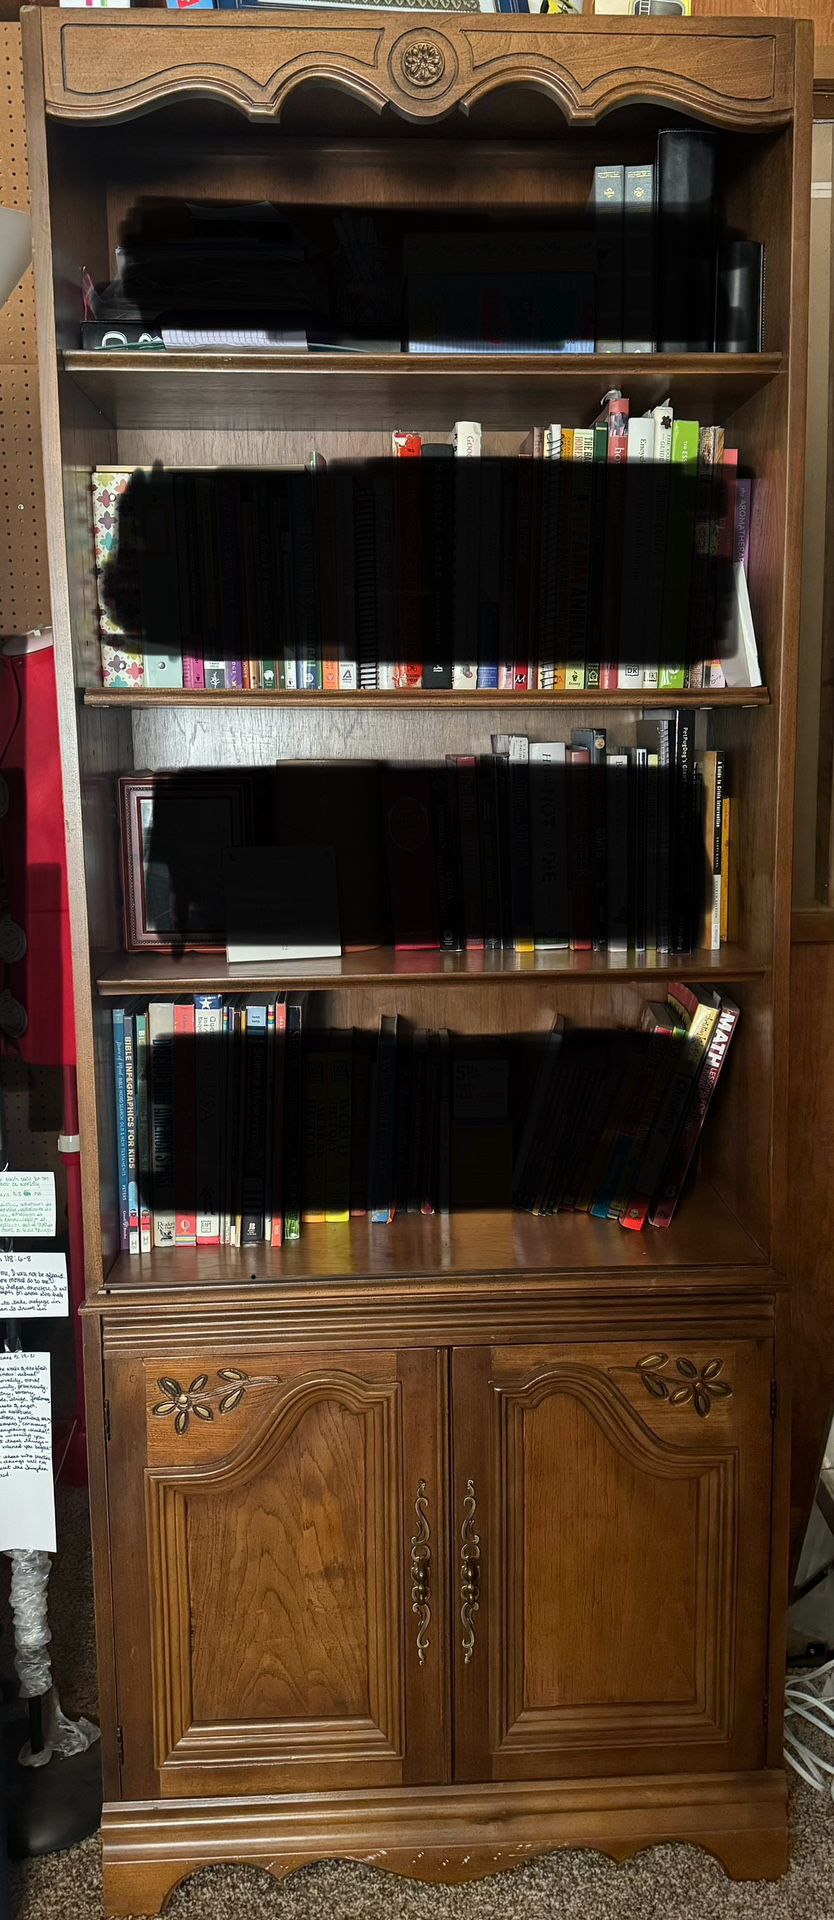 2 Bookshelves, Bookshelf, Bookcase